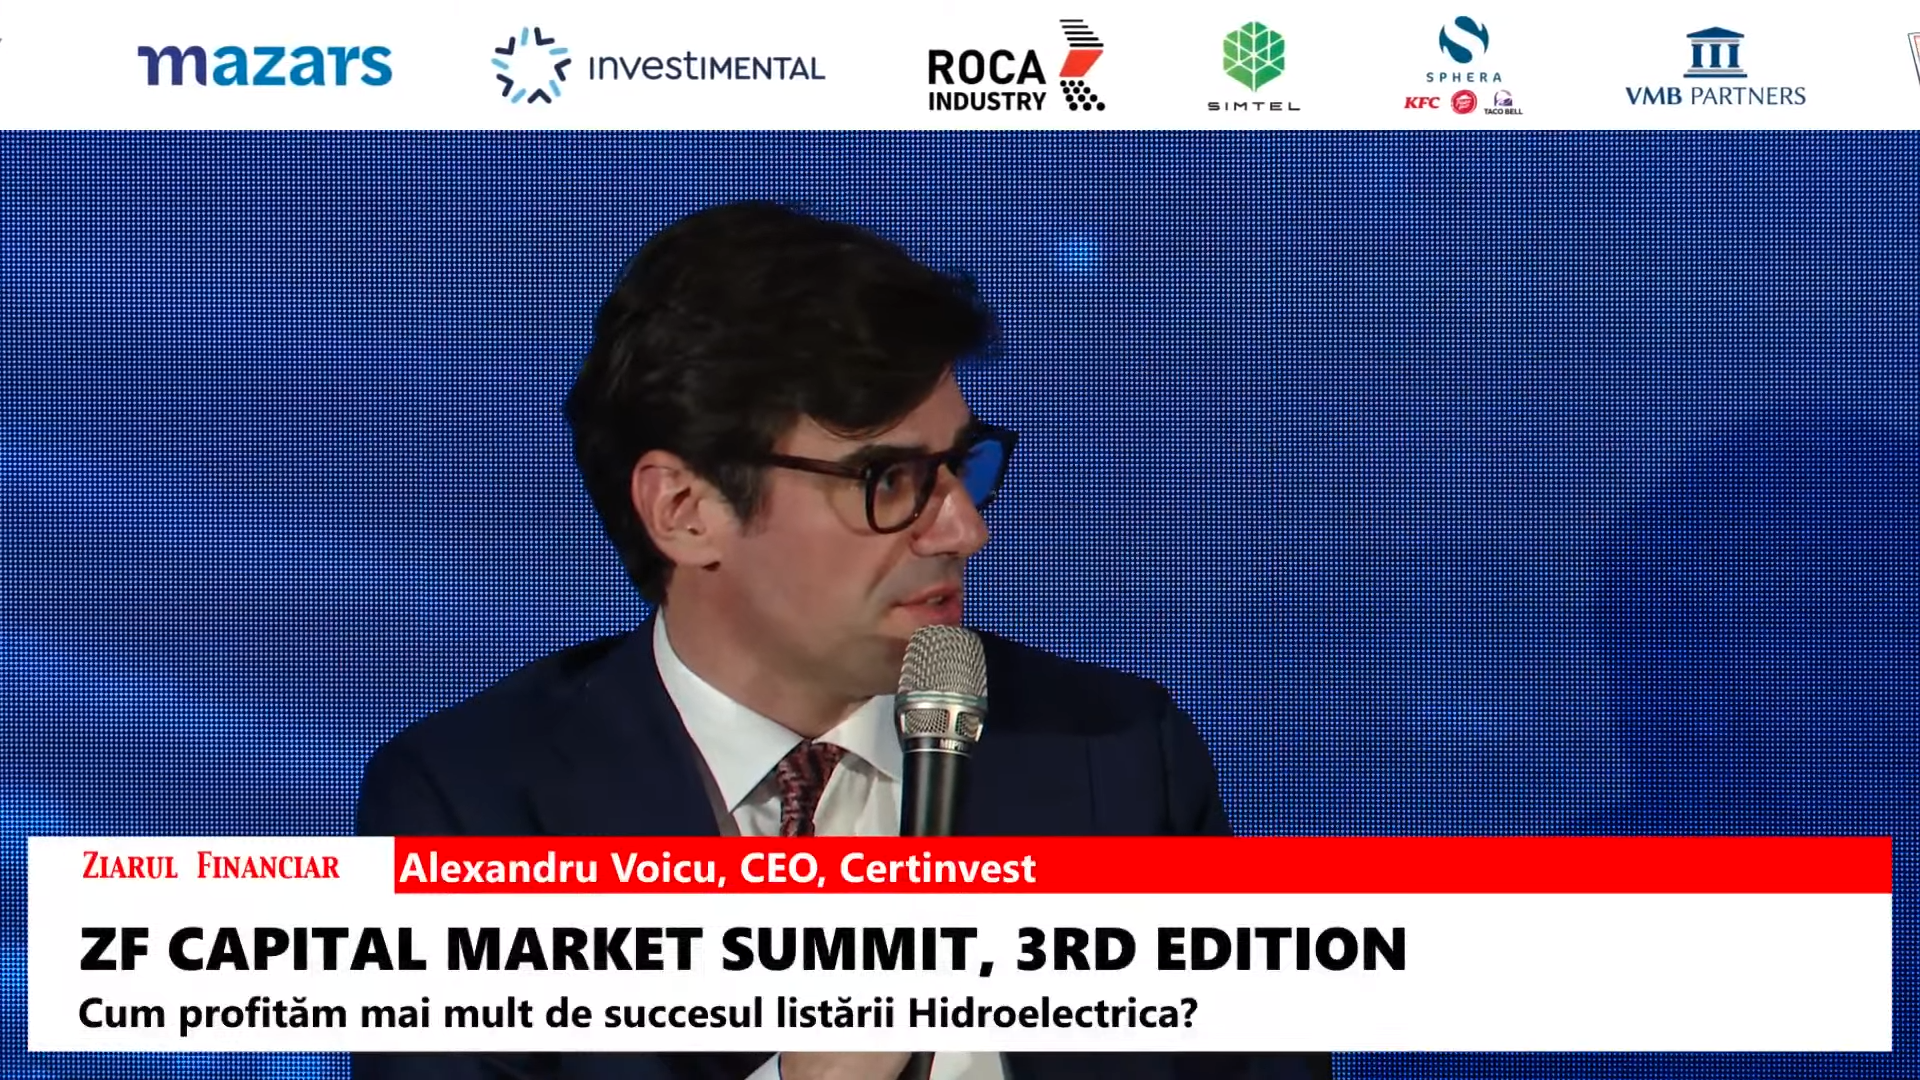 Alexandru Voicu, CEO, Certinvest: Cred că piaţa arată atractiv, dar în ceea ce priveşte investitorii străini ar trebui puţin să ne uităm şi la ce facilităţi le oferim